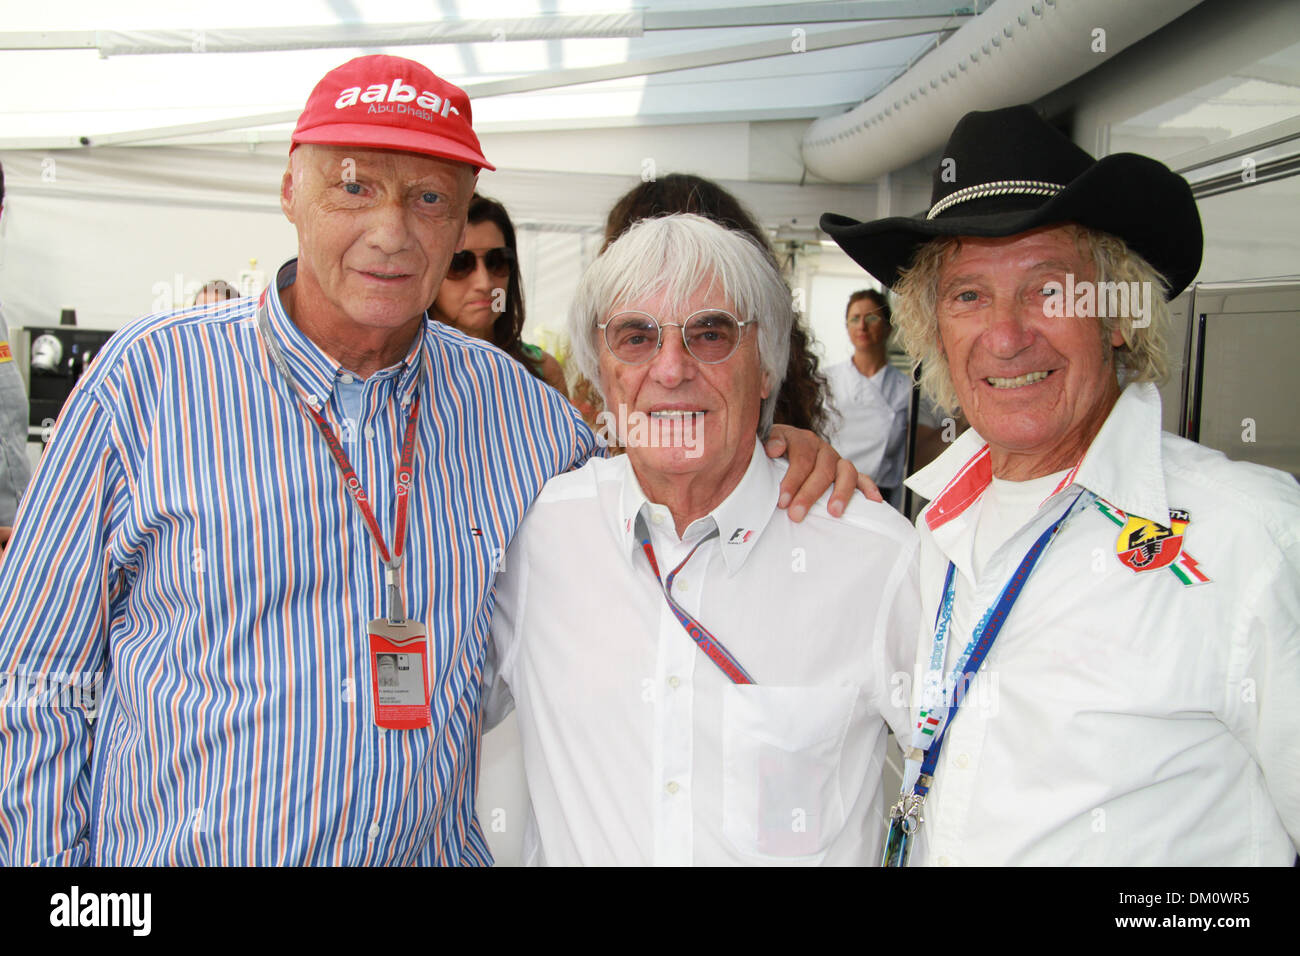 Niki Lauda Bernie Ecclestone and Arturo Merzario F1 mula One - Italian  Grand Prix Monza Italy - 09.09.12 Stock Photo - Alamy